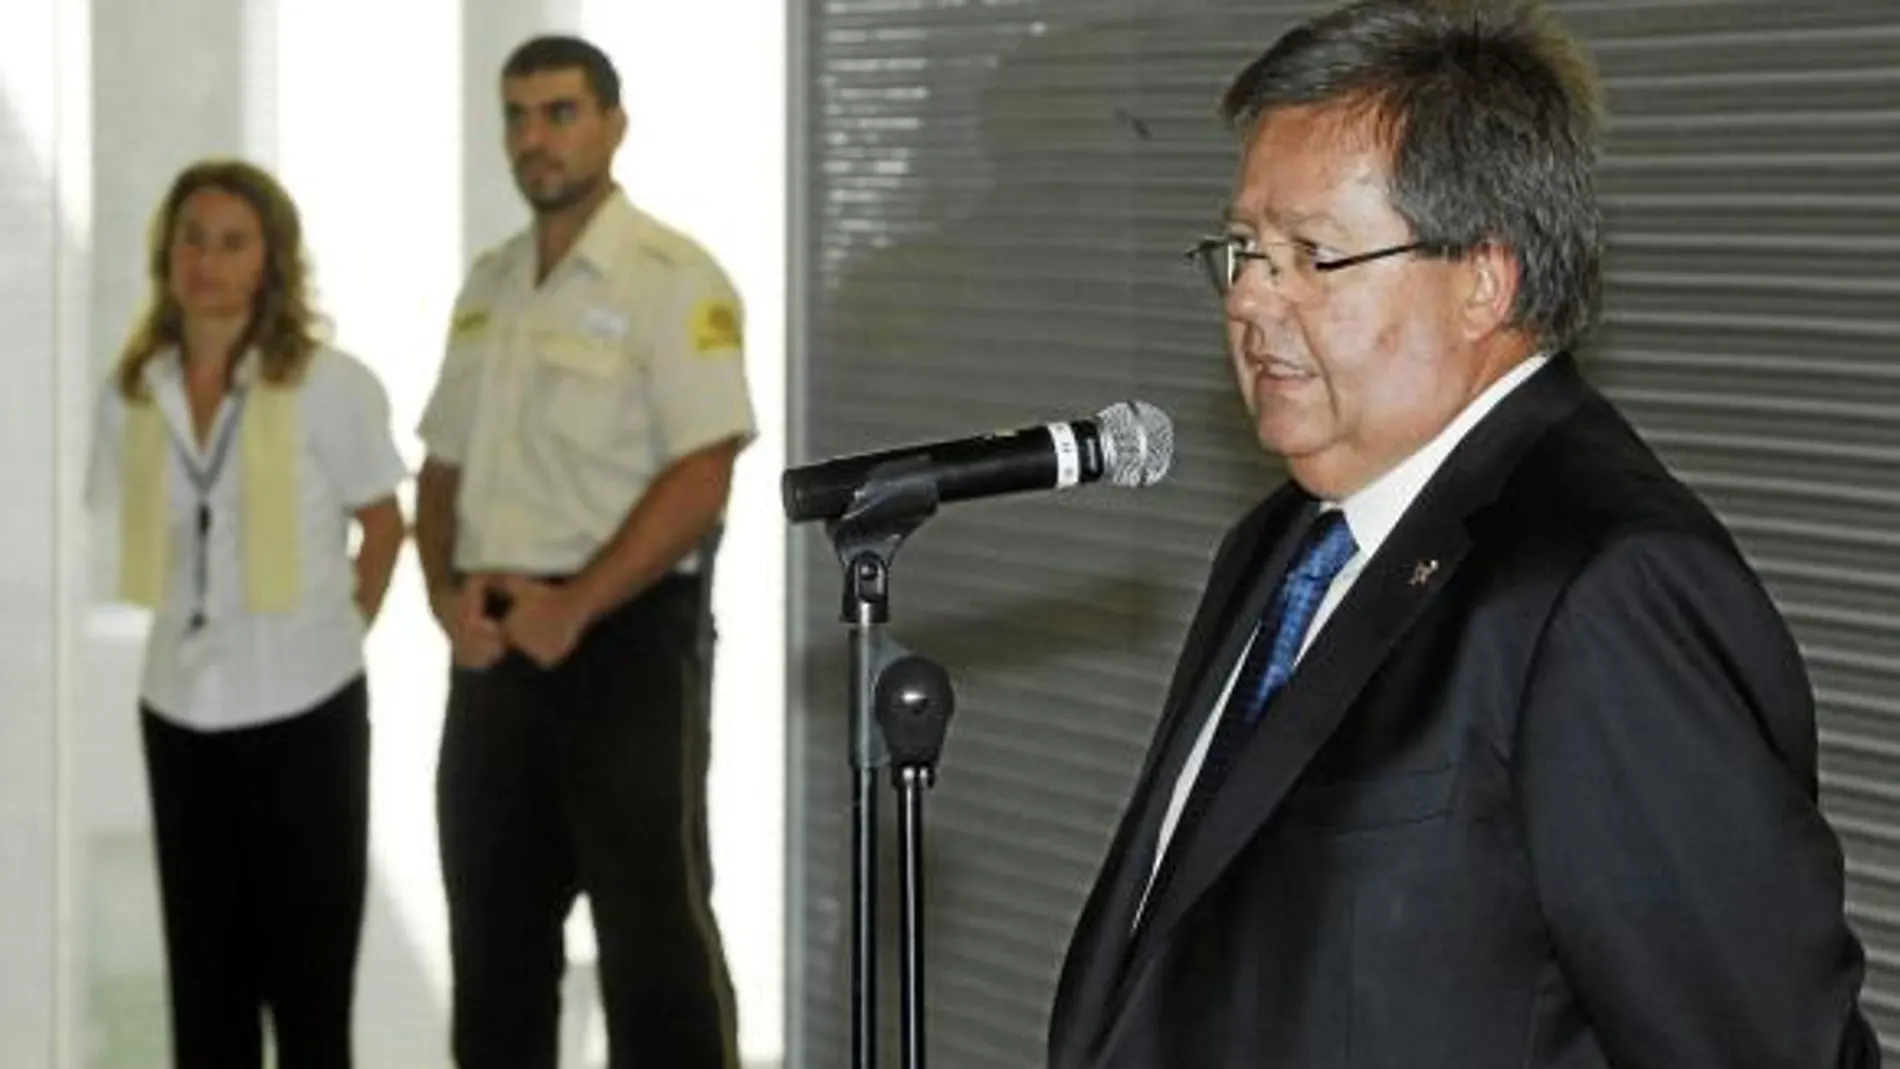 García Bragado sigue siendo teniente de alcalde pese a estar imputado en la trama del Hotel del Palau